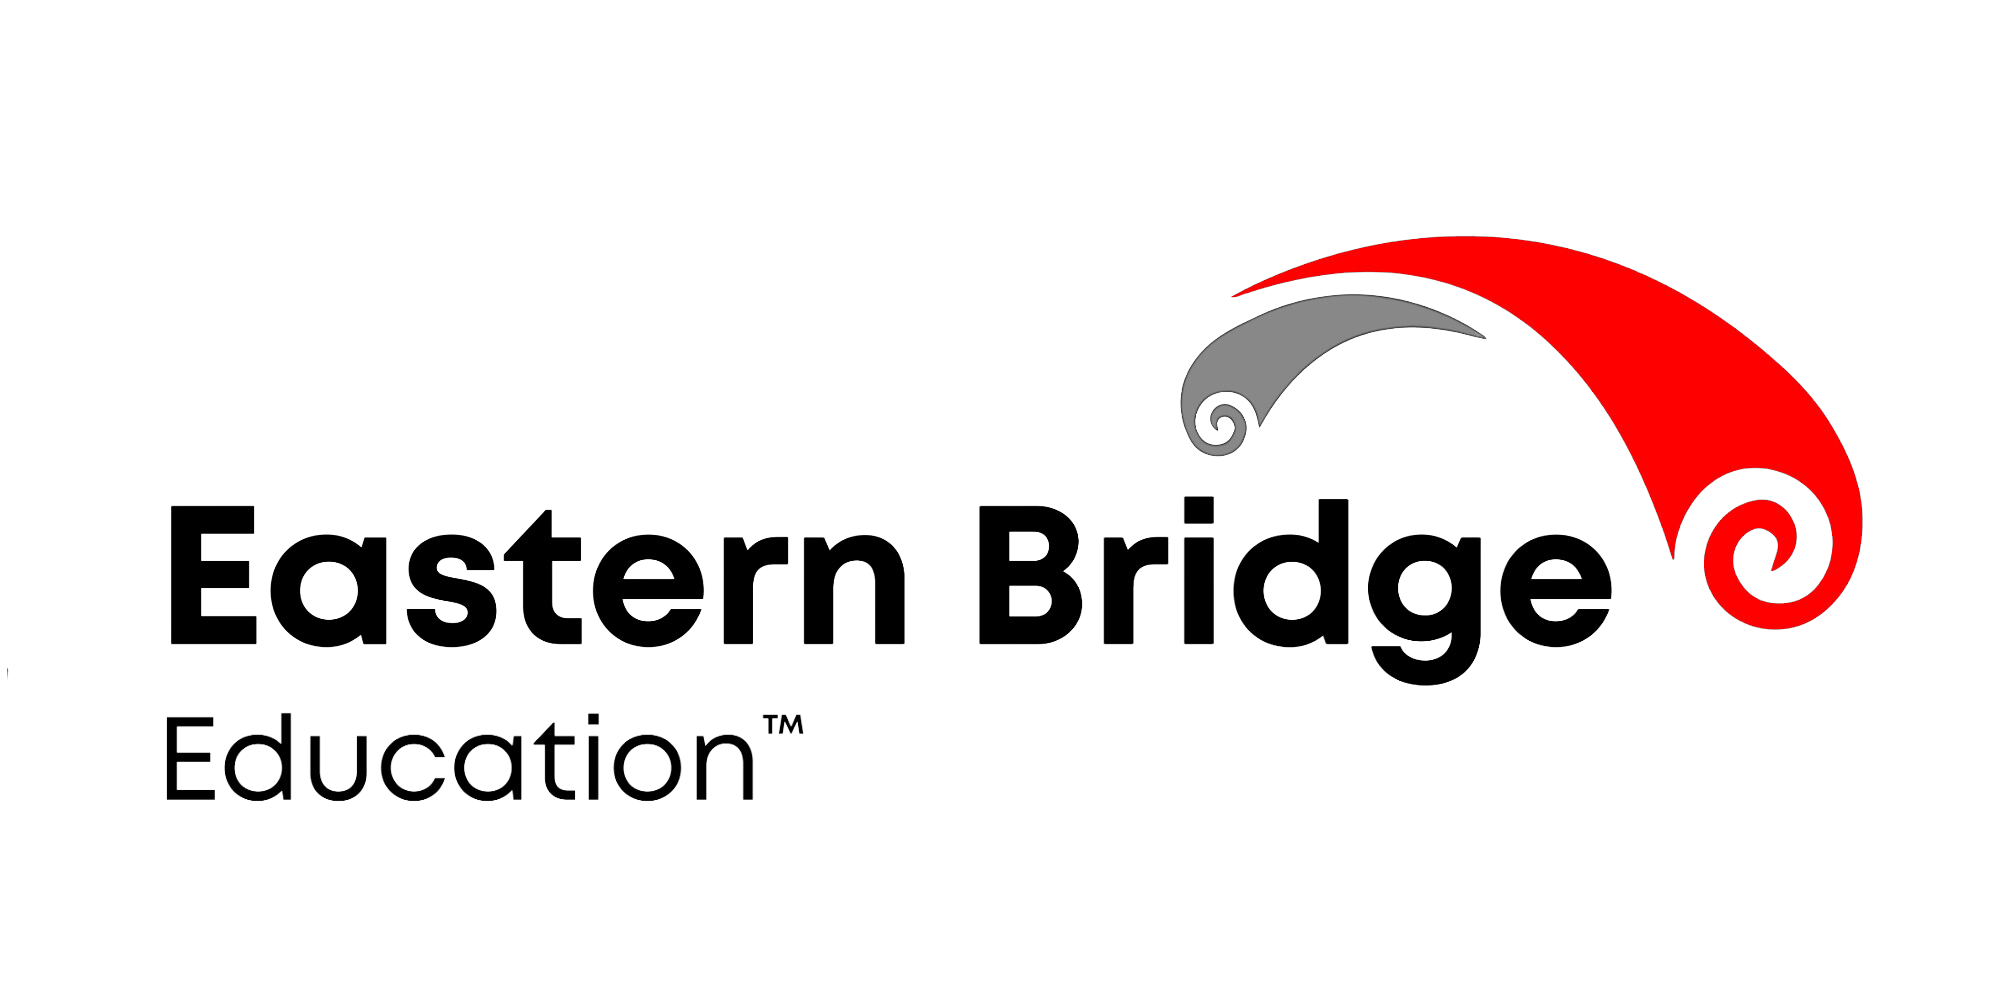 Eastern Bridge Education